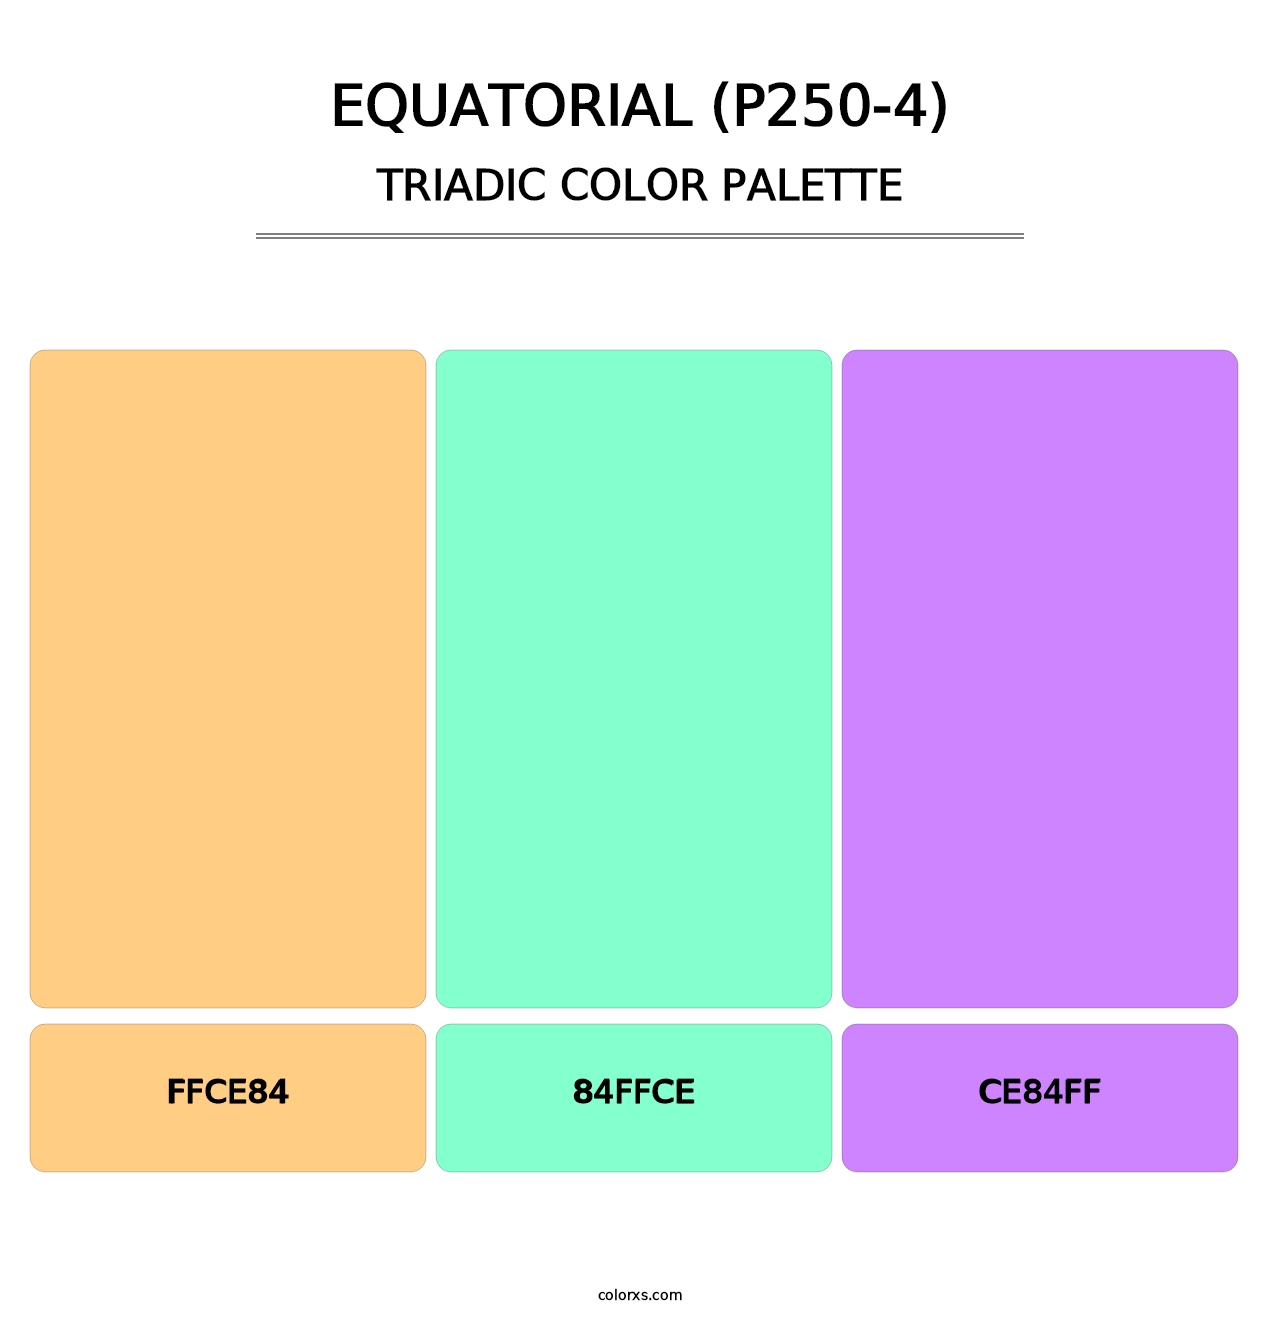 Equatorial (P250-4) - Triadic Color Palette